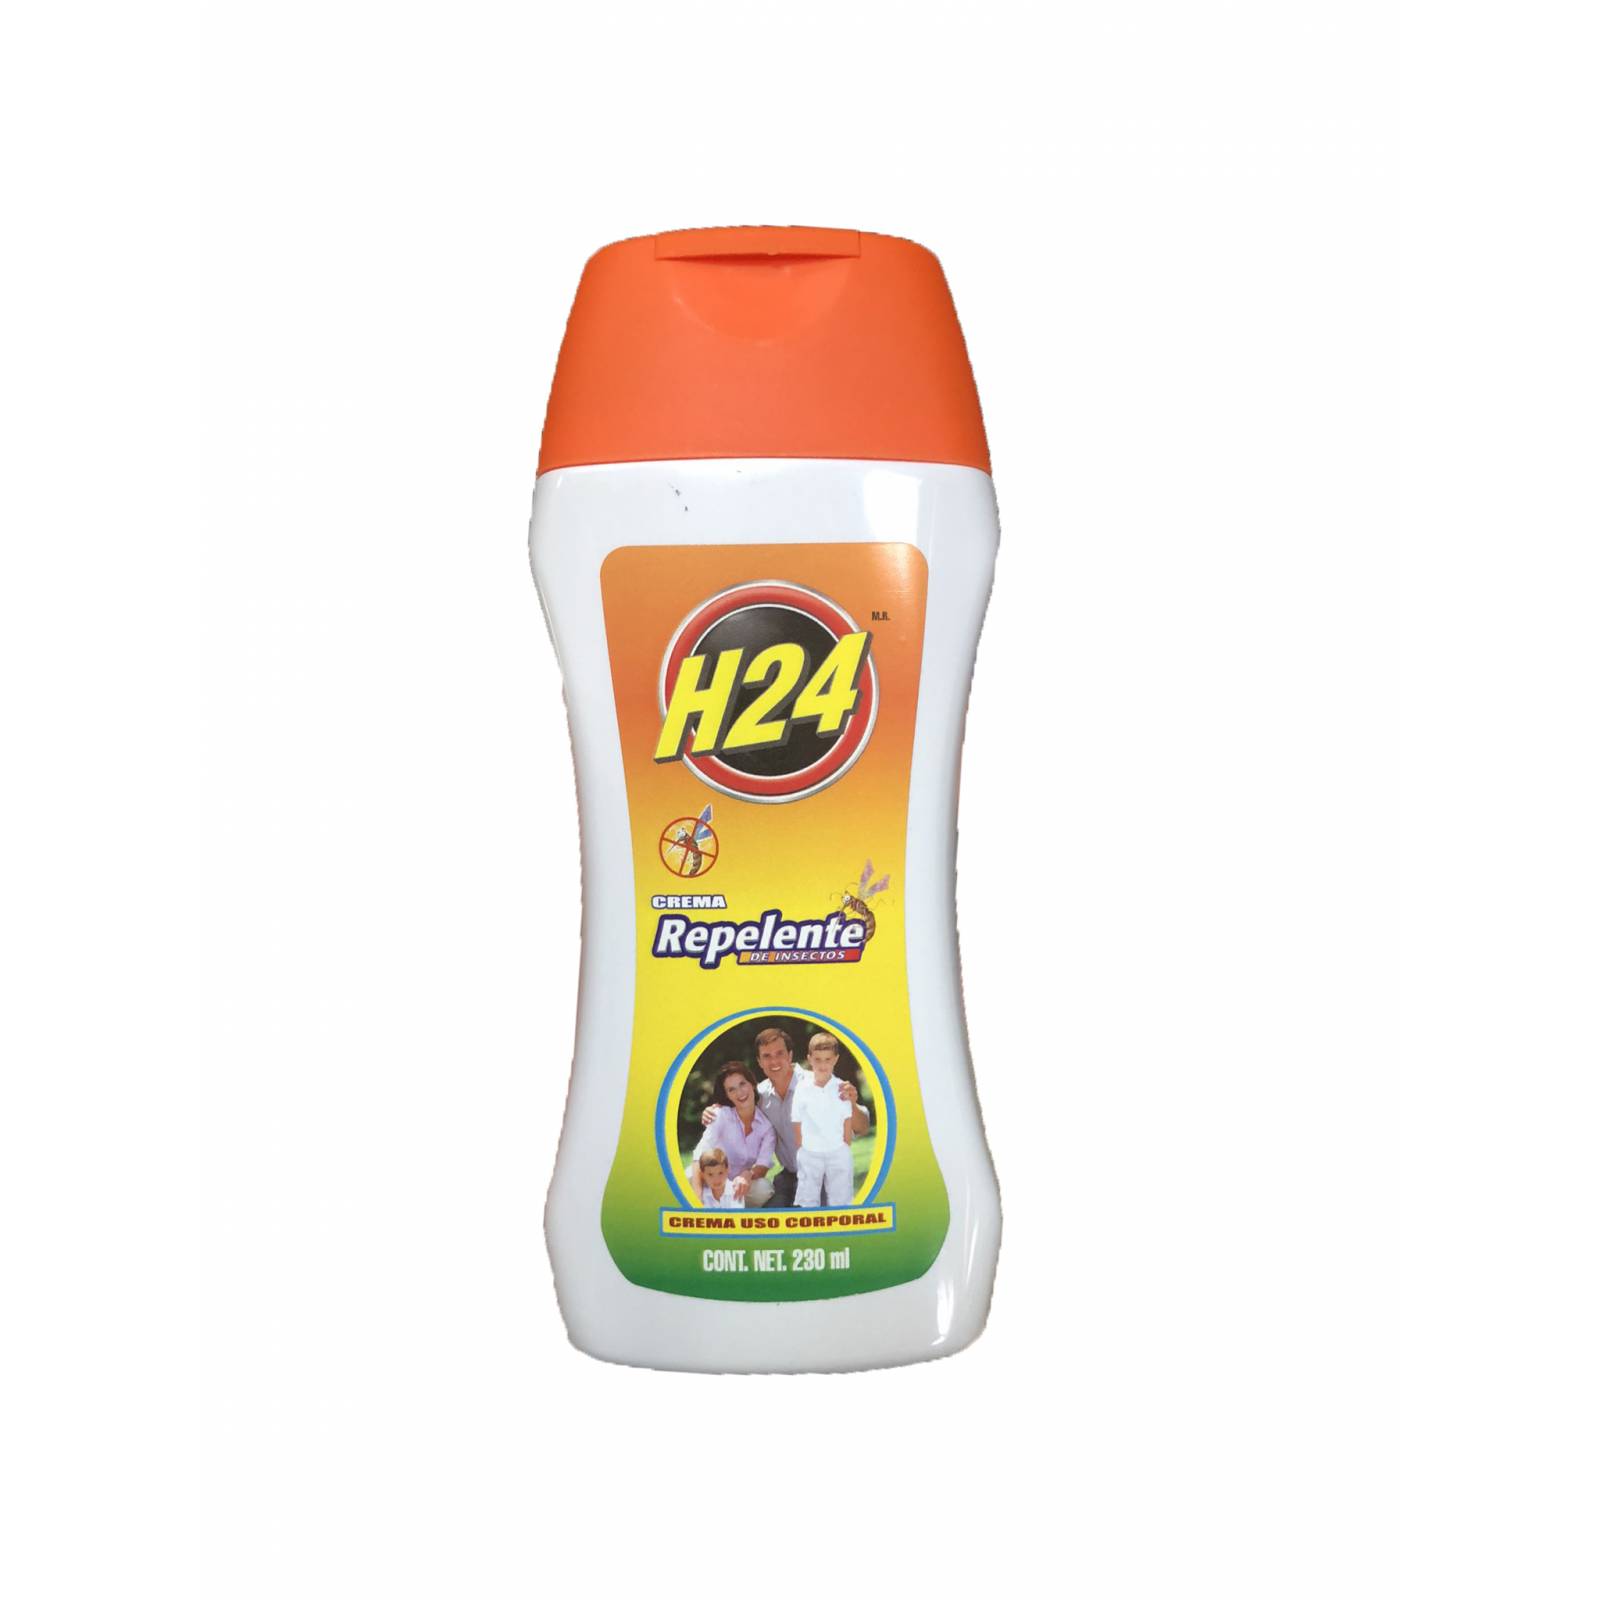 H24 Crema repelente de insectos para uso corporal, niños y adultos. 230ml